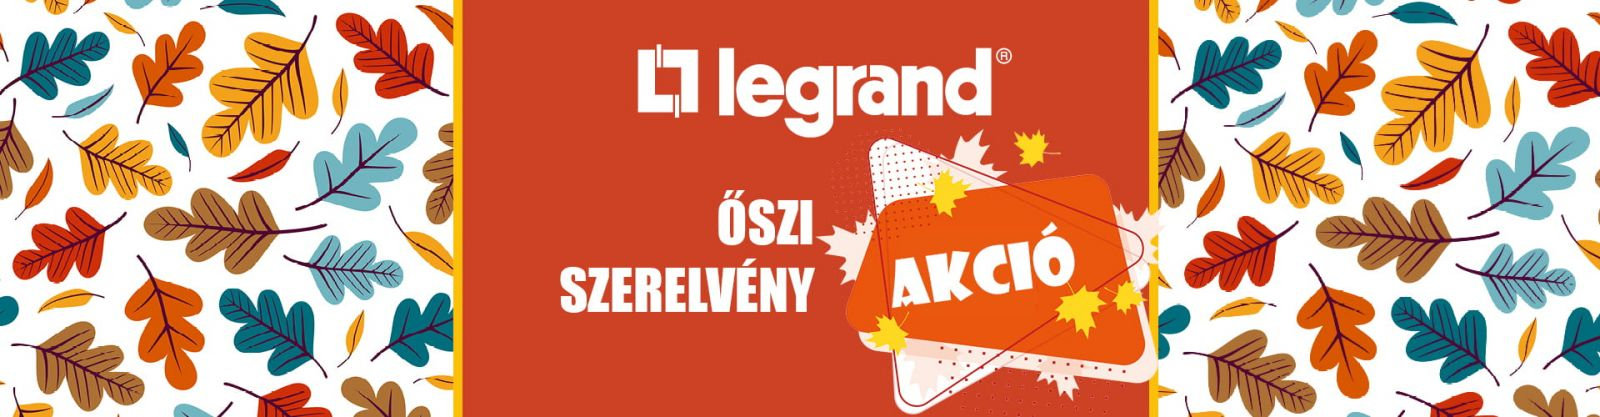 Legrand őszi akció nyereményjáték, szerelvények - Vilszershop.hu